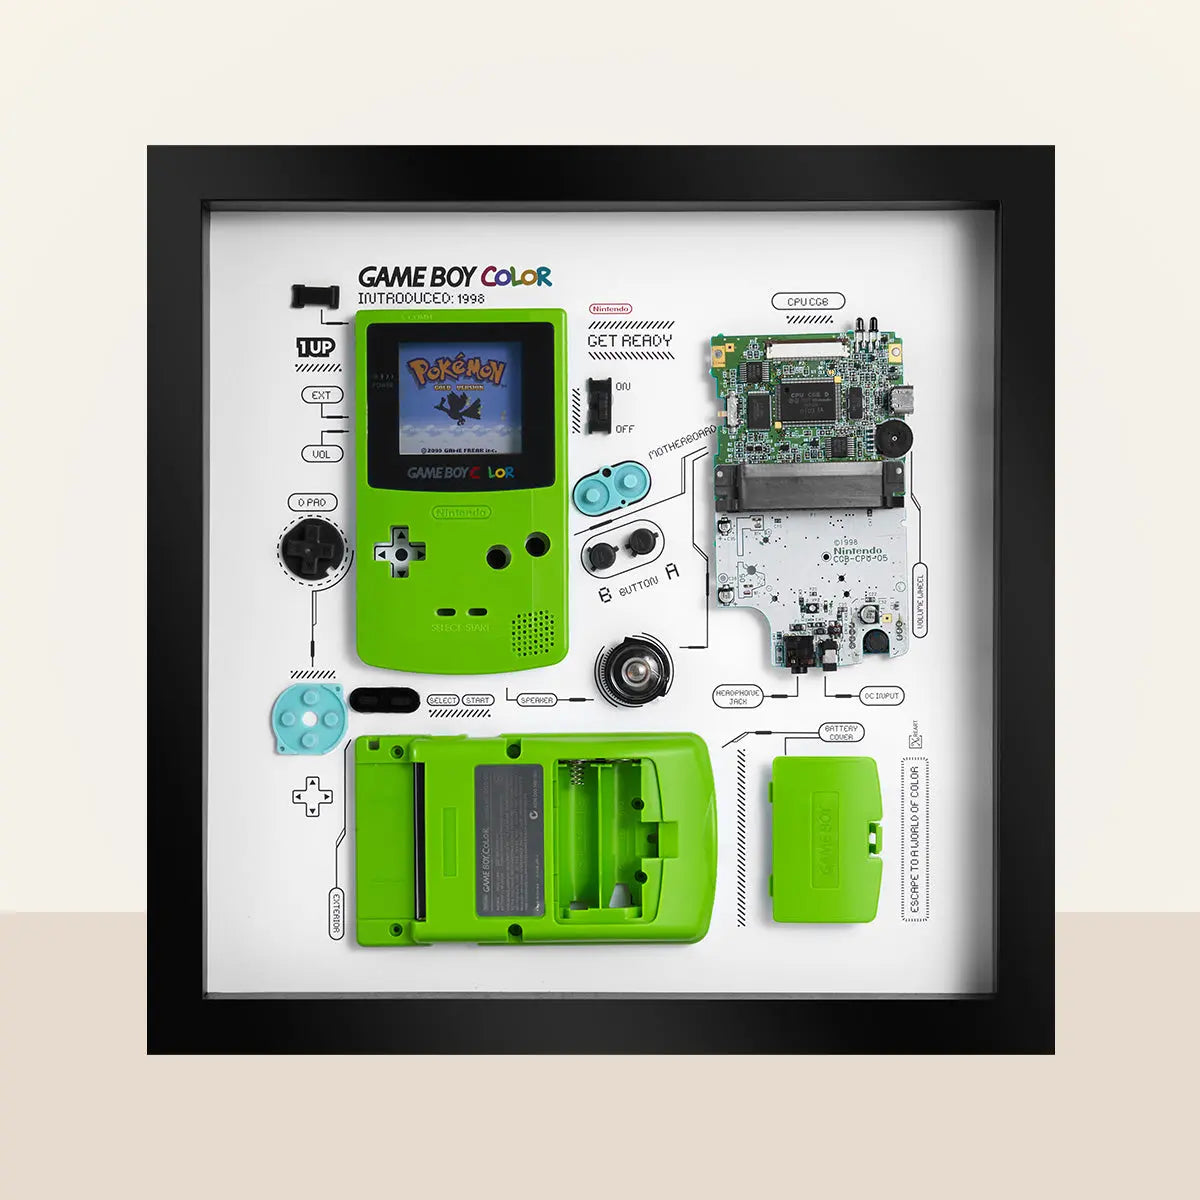 kaste støv i øjnene Egnet Sikker Xreart GameBoy Color Framed Artwork Personal Collection and Nostalgic Gift